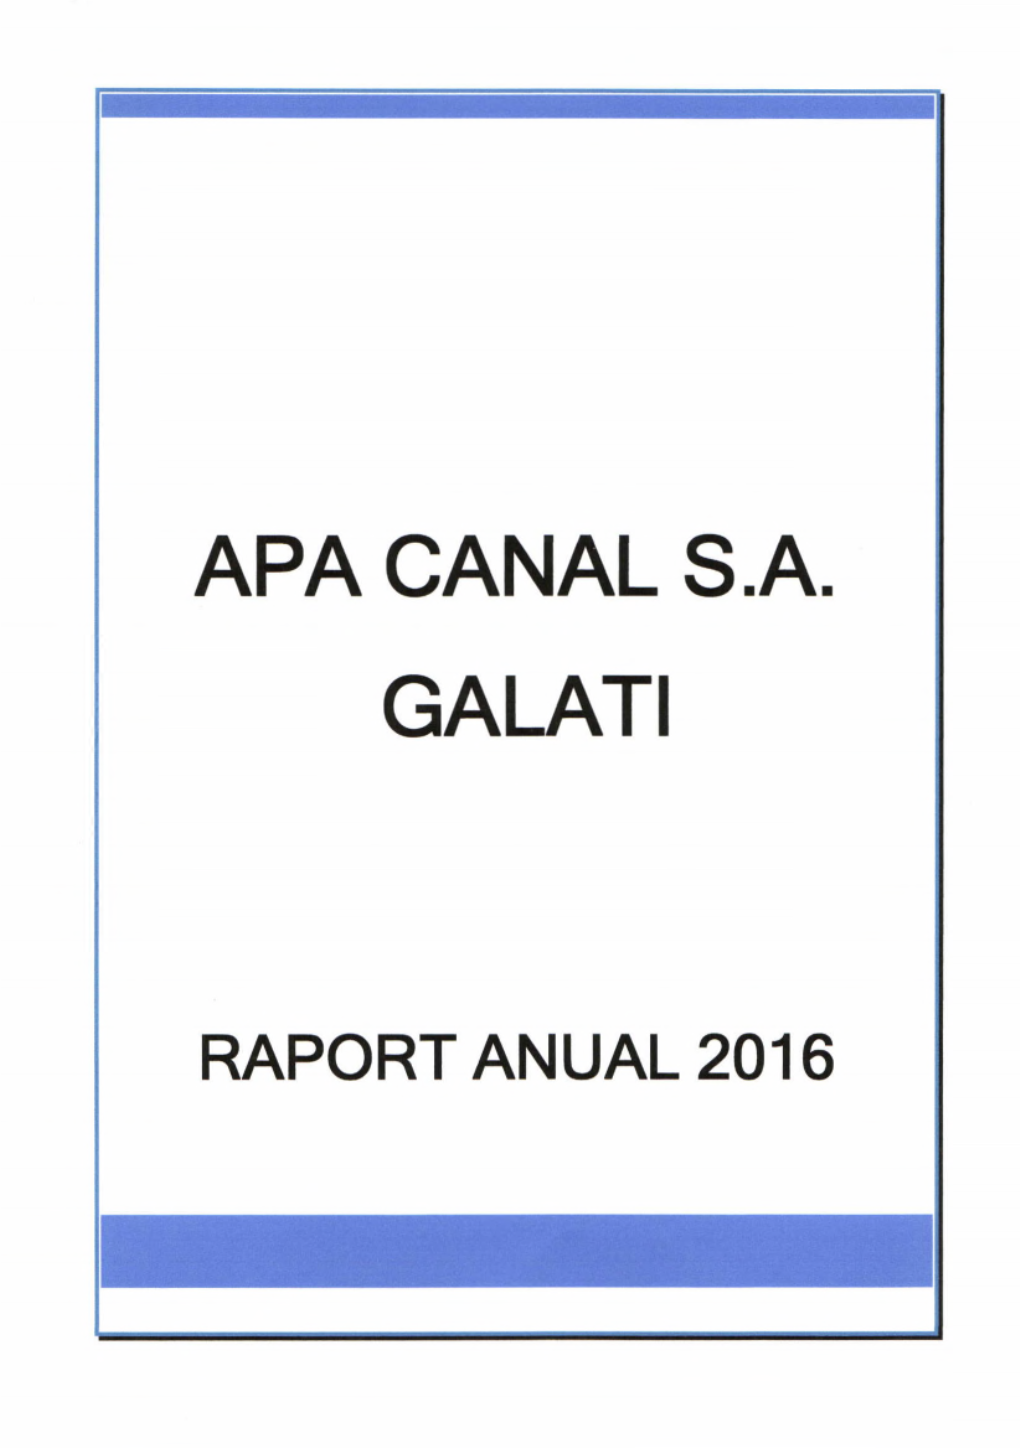 Apa Canal S.A. Galati